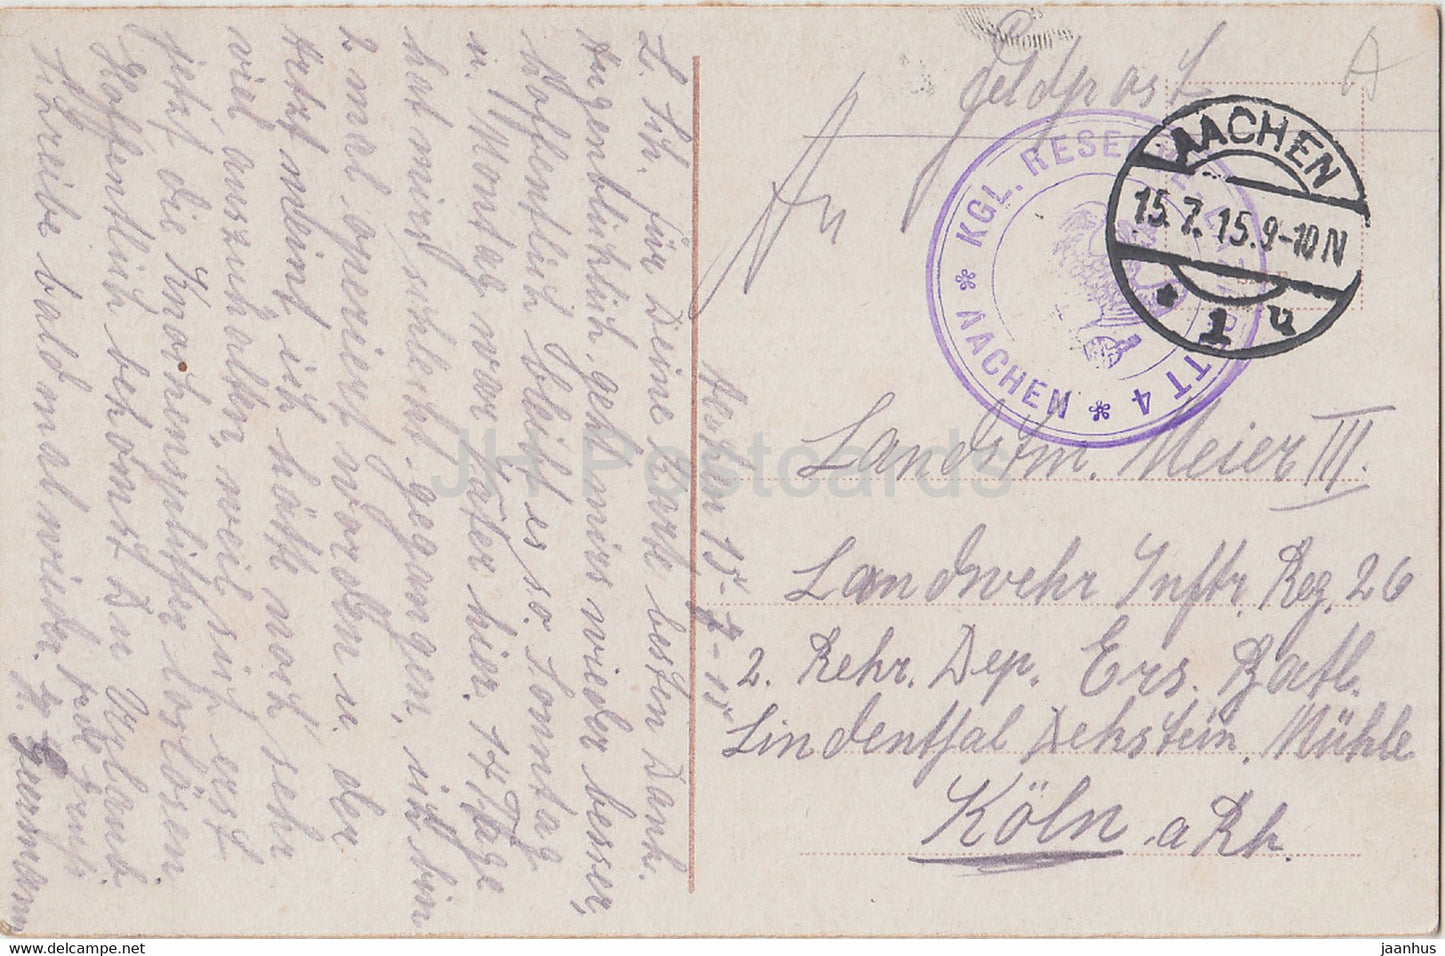 Aachen - Feldpost - old postcard - 1915 - Germany - used